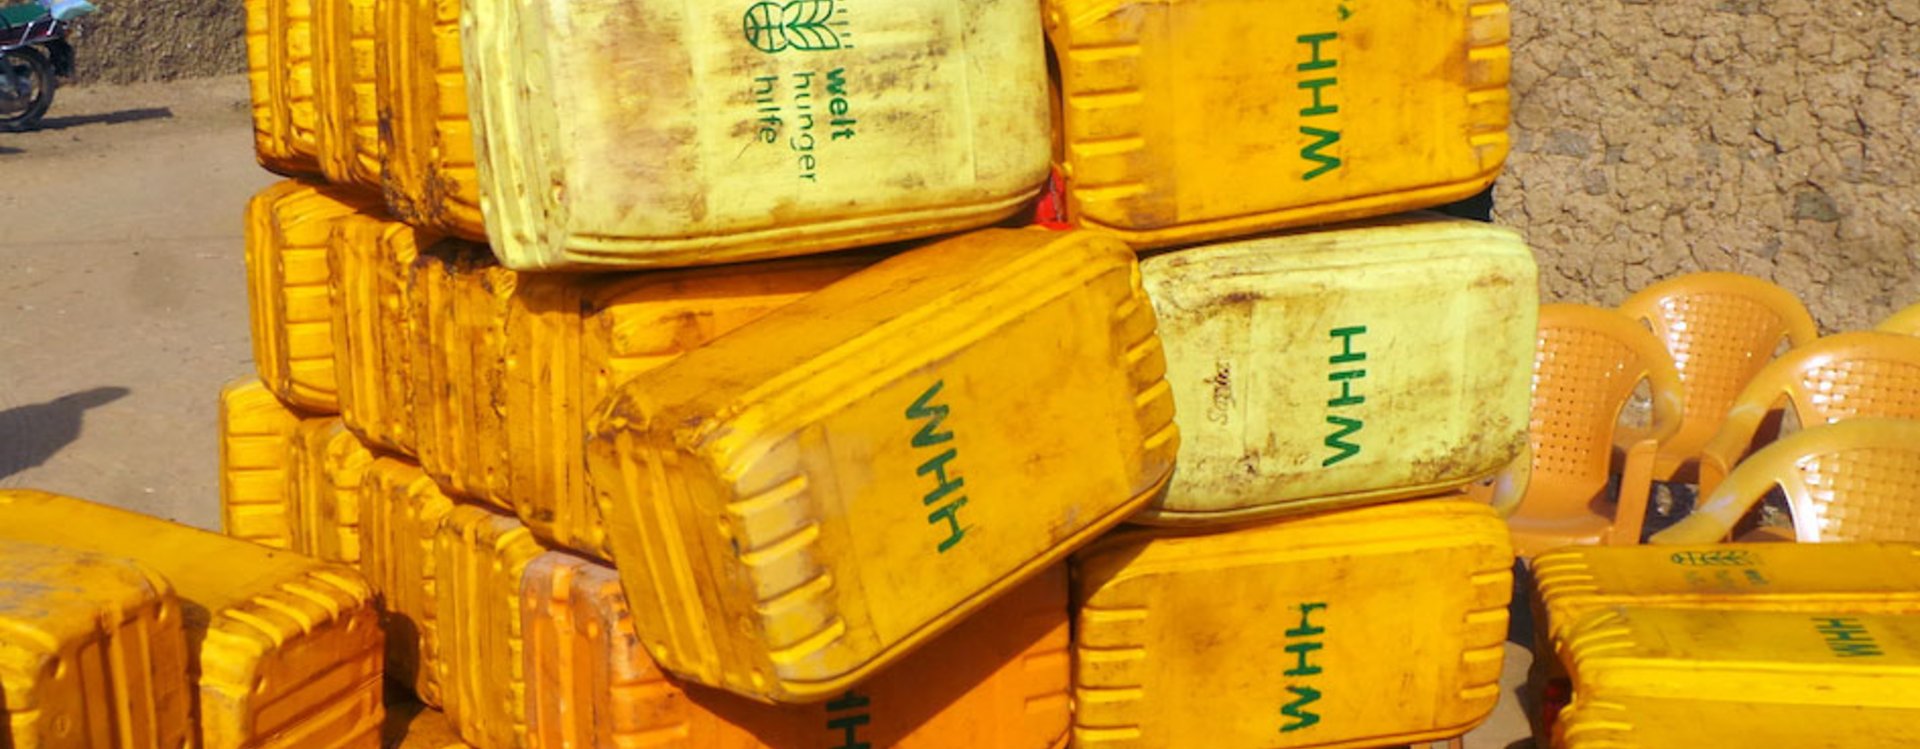 Welthungerhilfe Niger WASH kit and food stocks © Welthungerhilfe